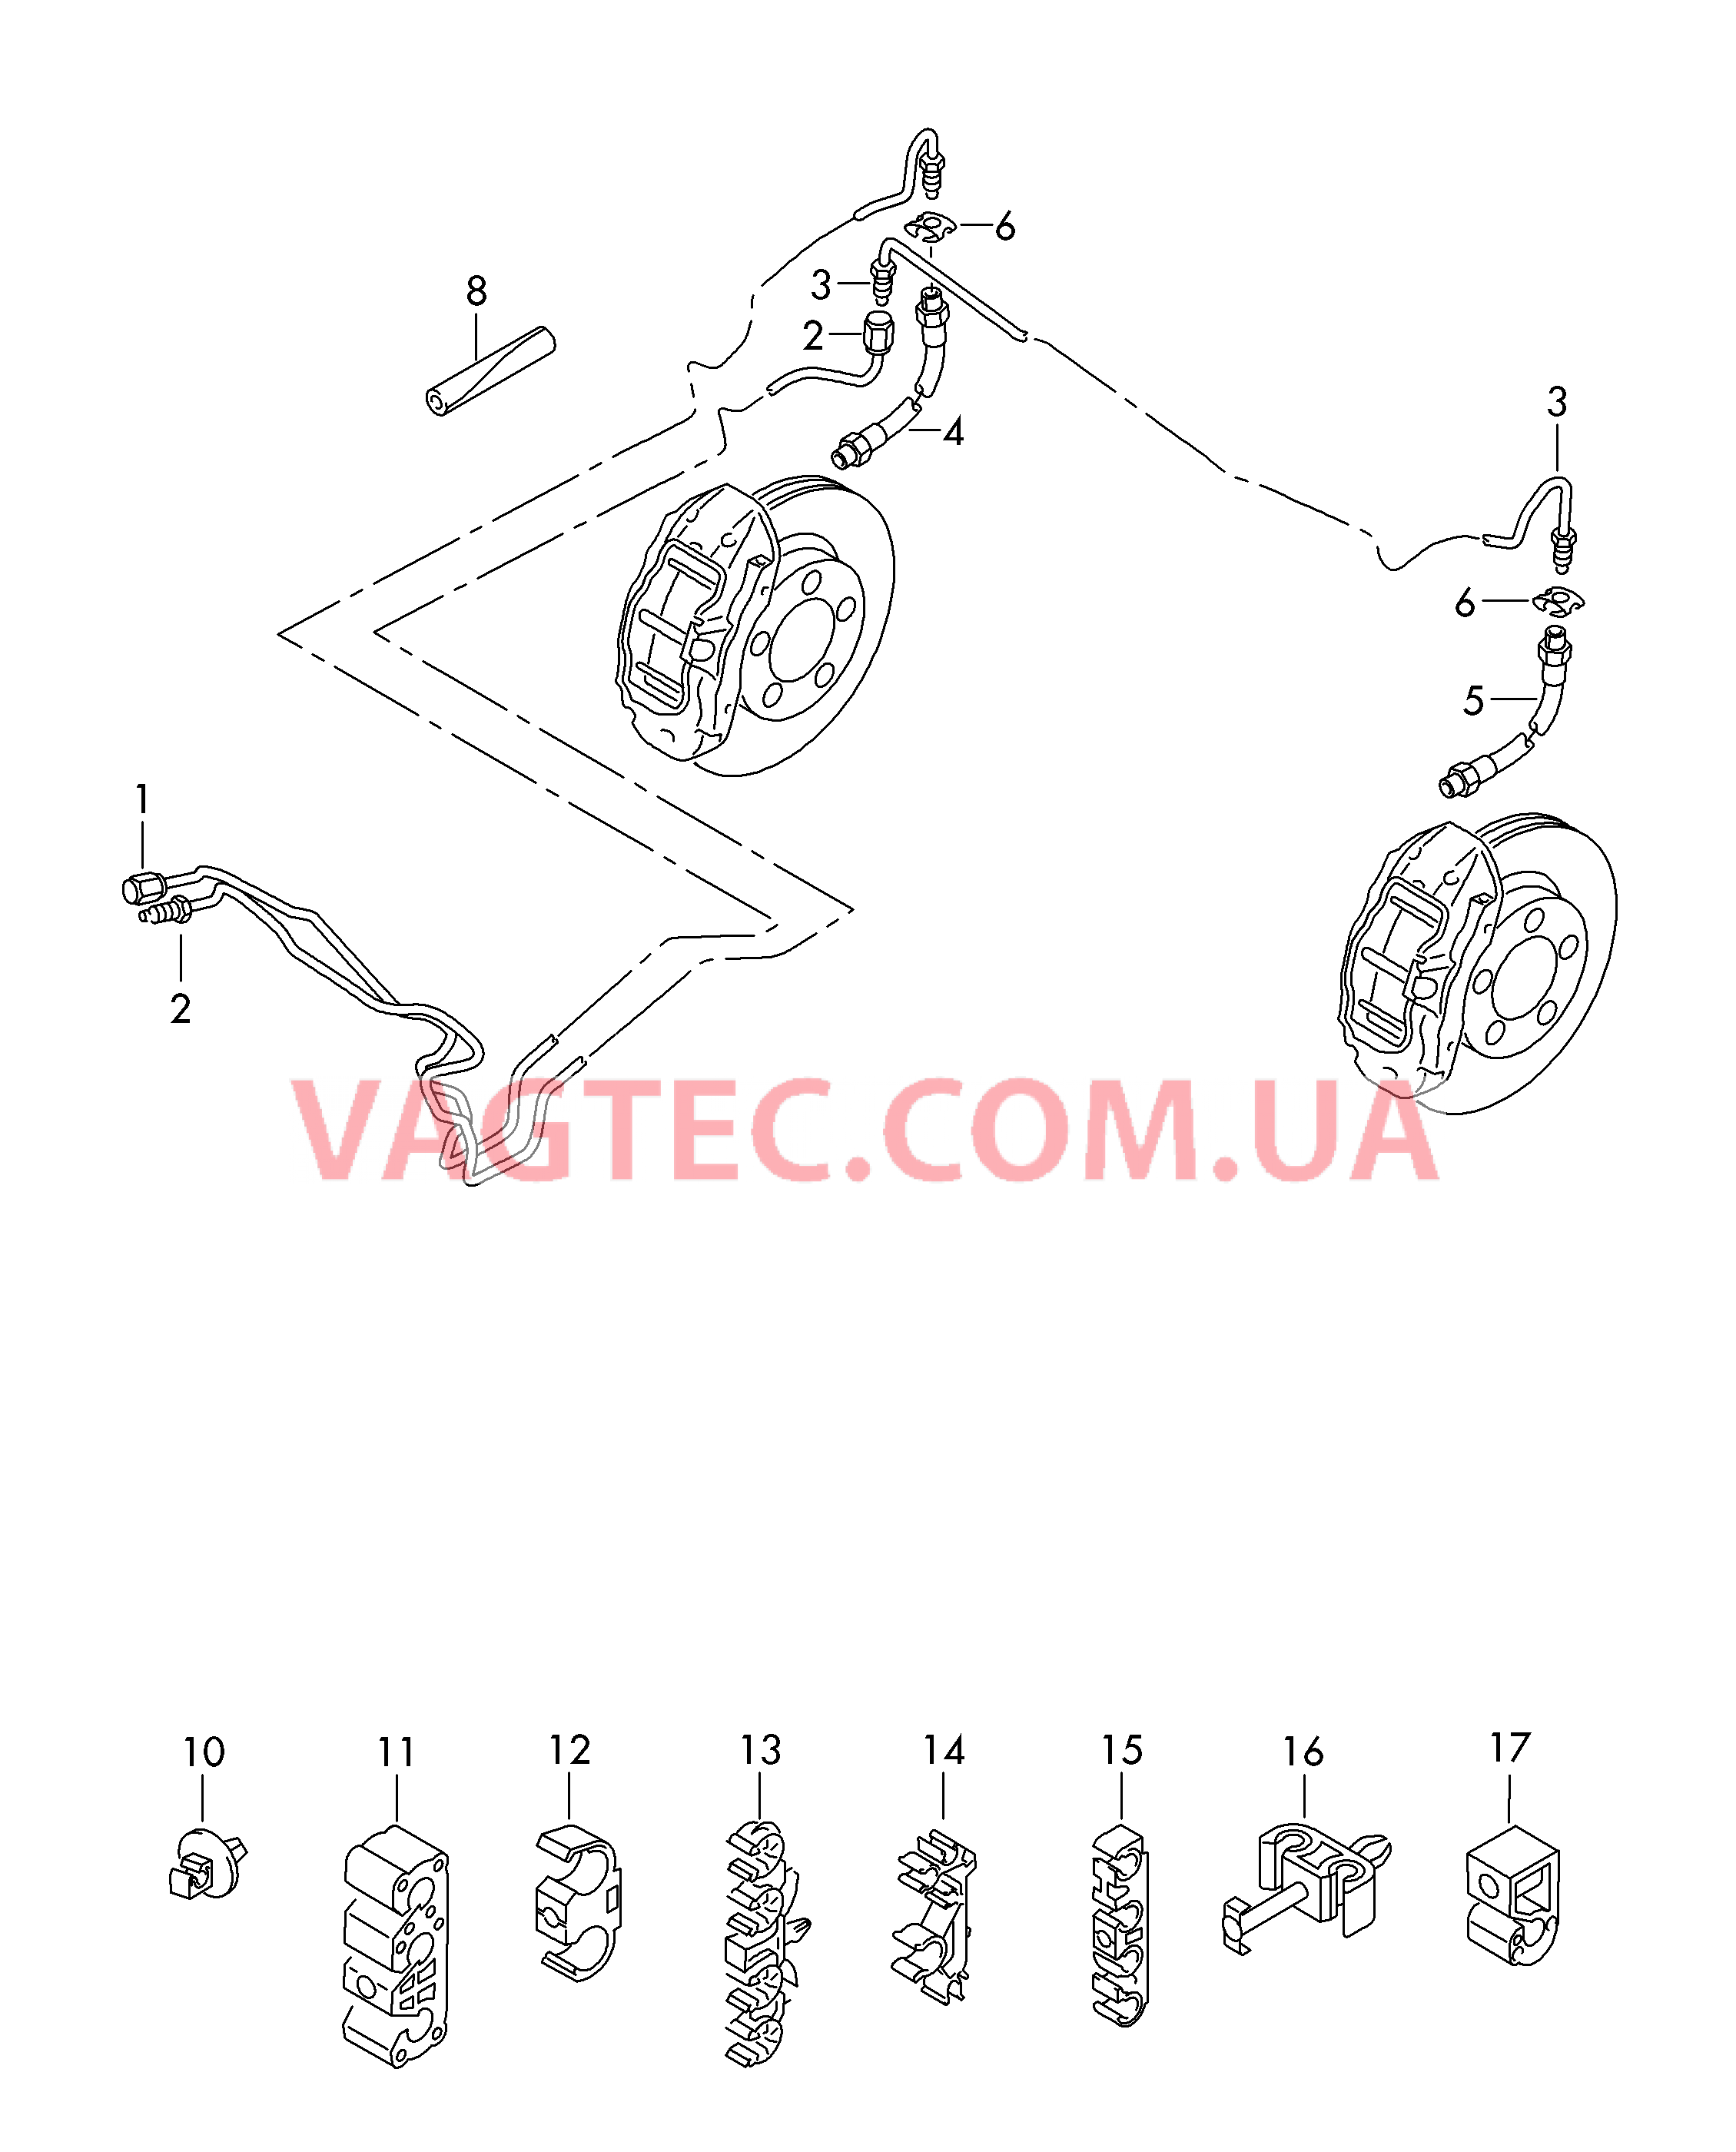 Тормозная трубка Тормозной шланг  для VOLKSWAGEN Touareg 2016